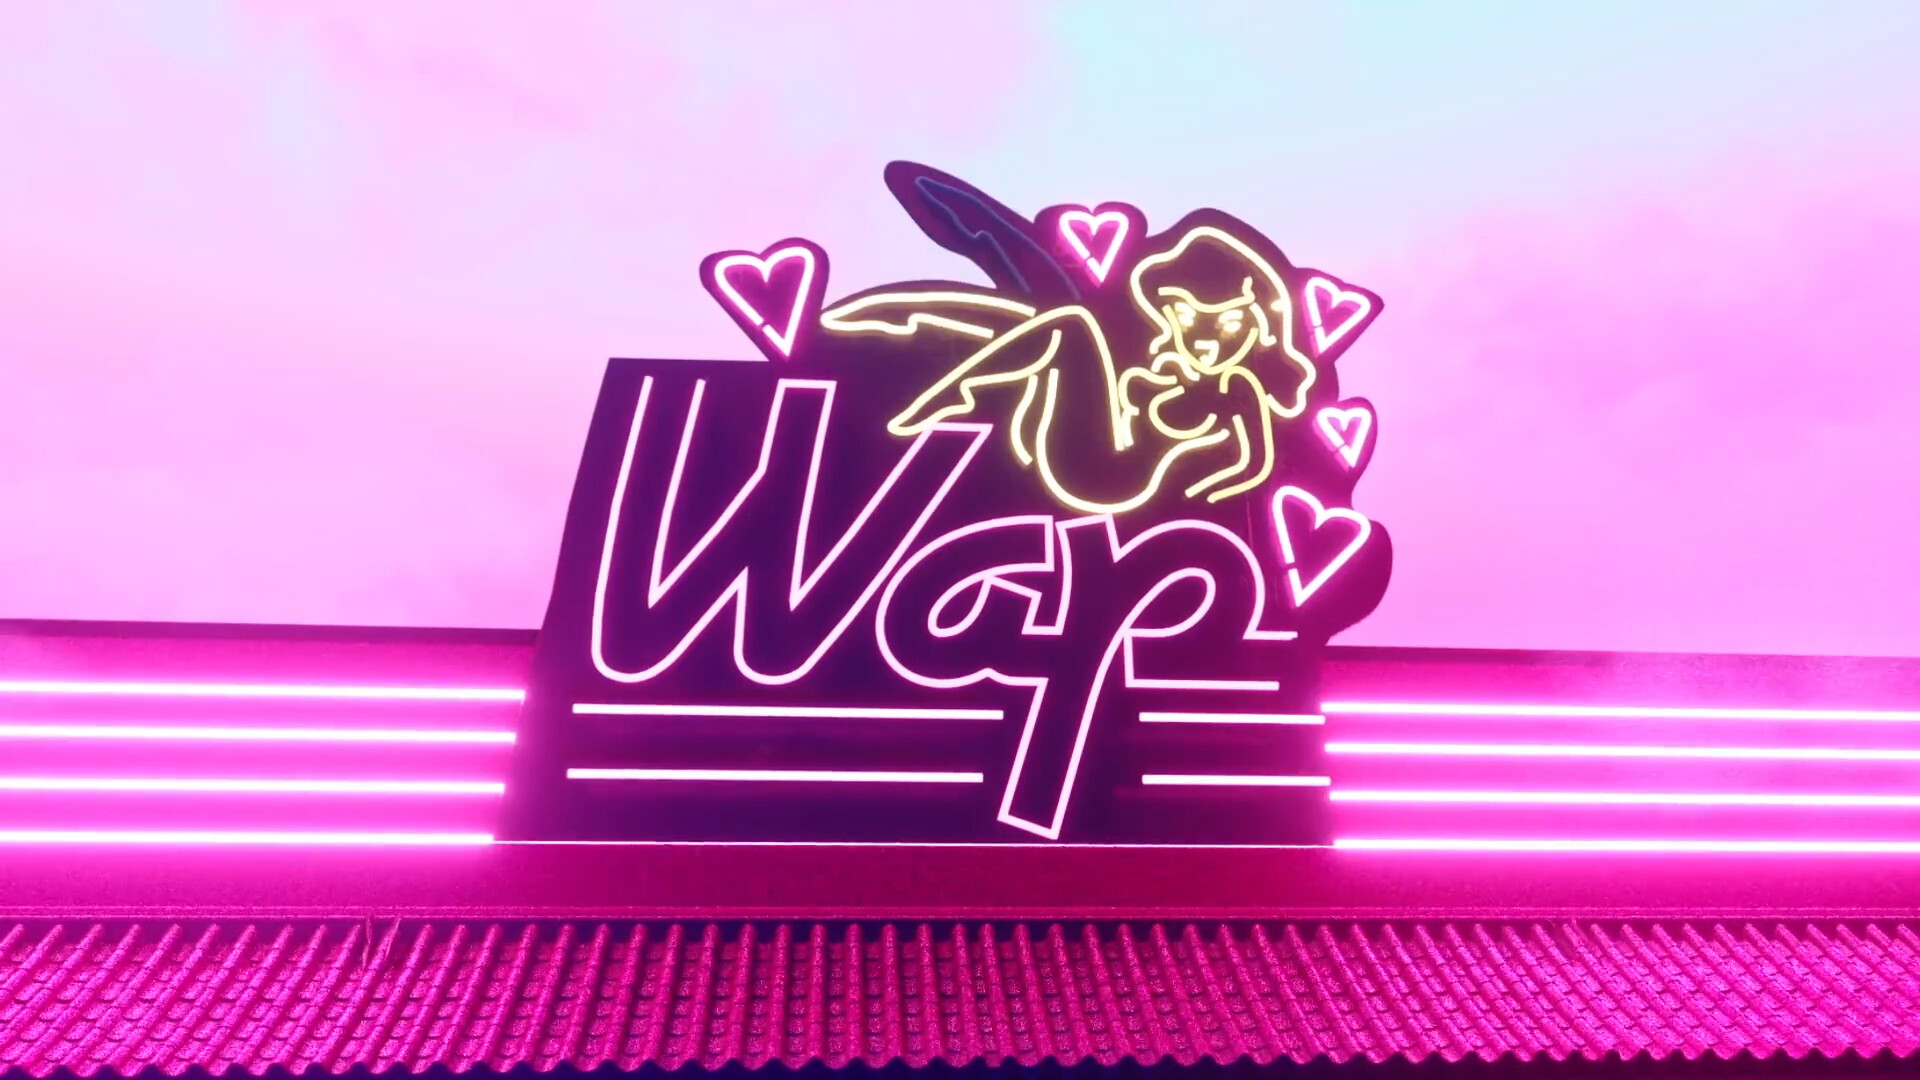 Wap feat